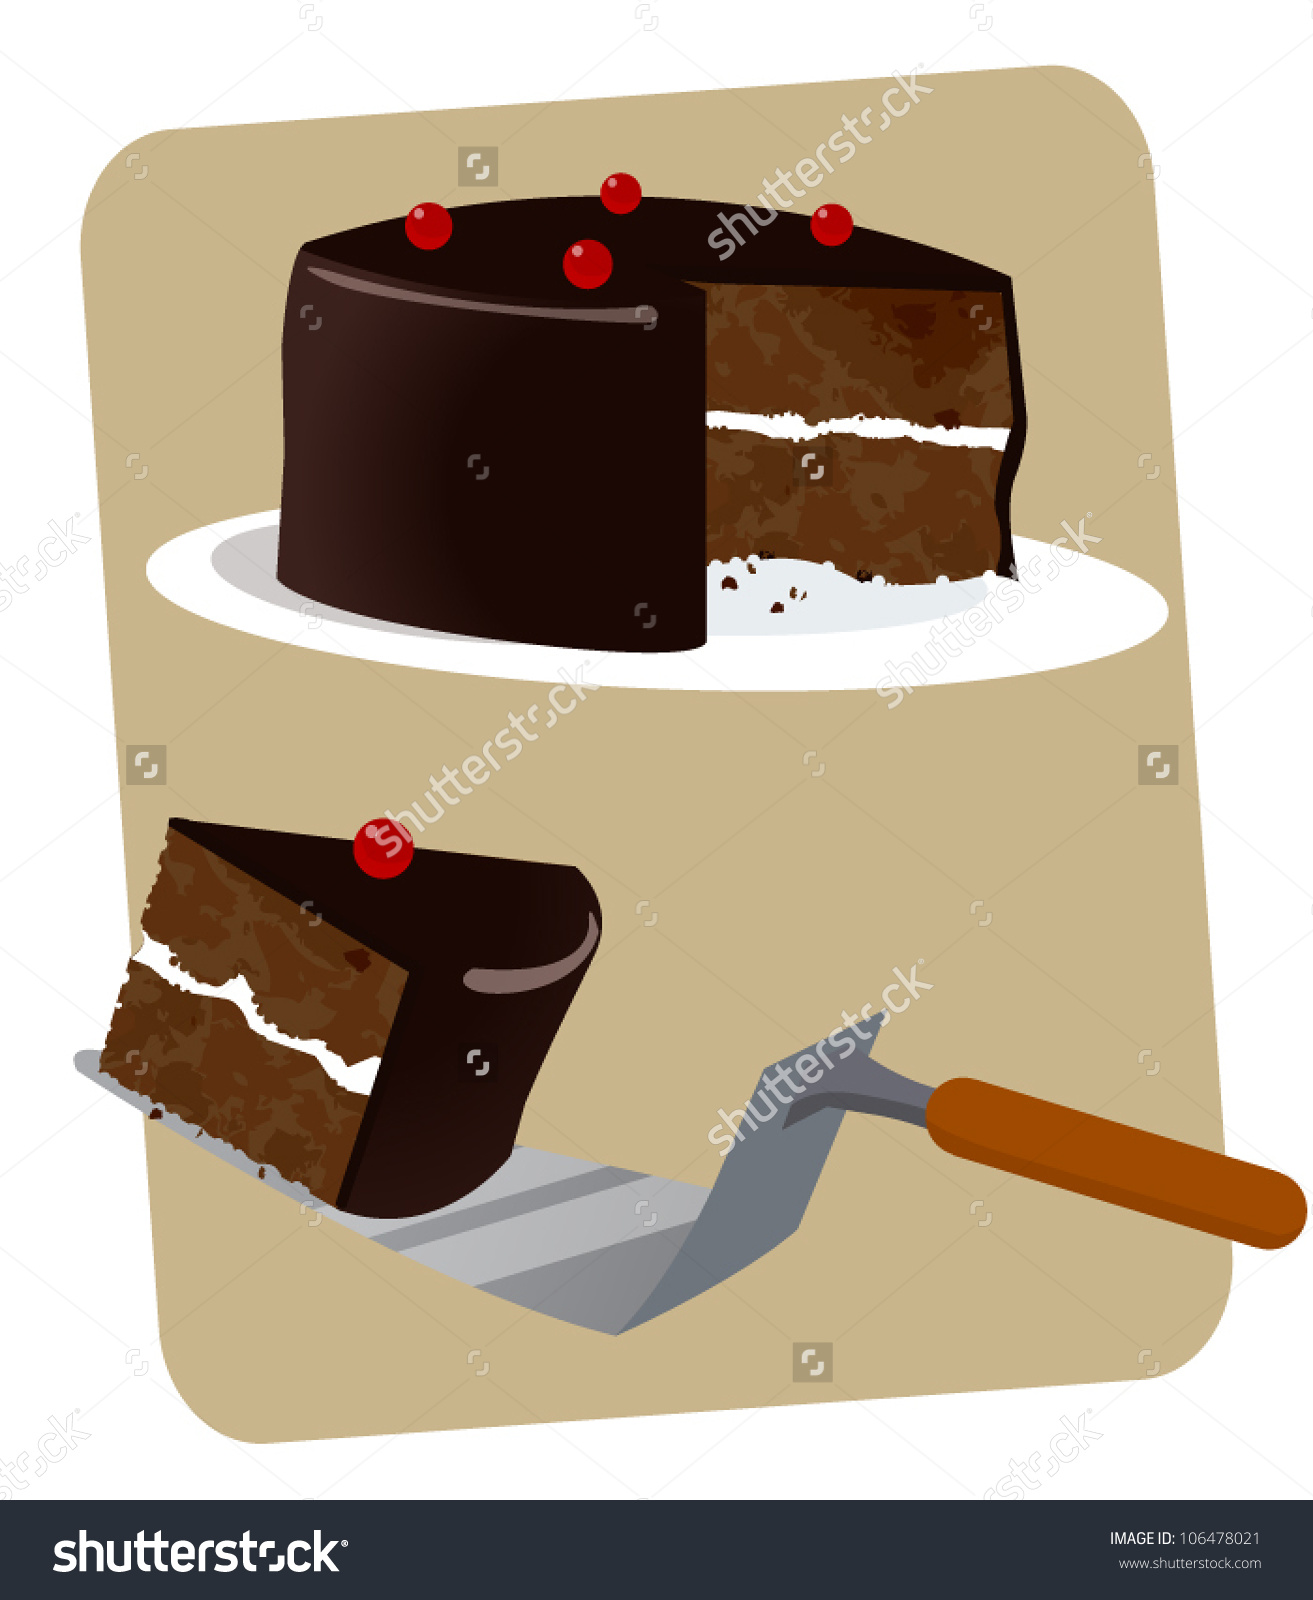 Шварцвальд торт рисунок